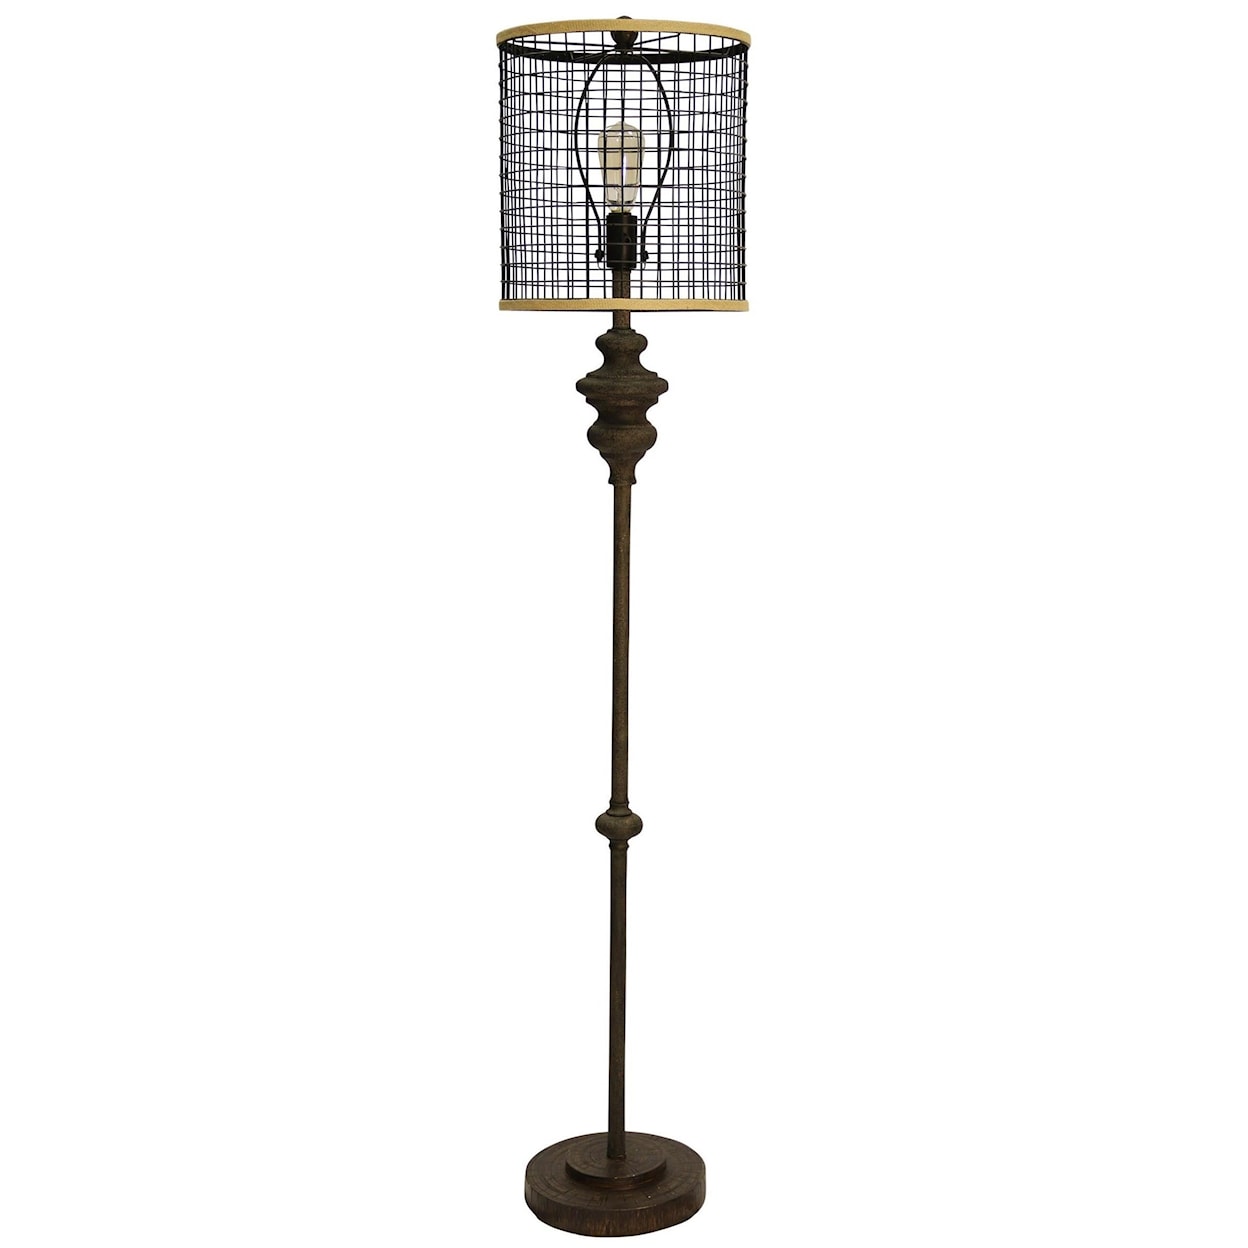 StyleCraft Lamps Industrial Floor Lamp